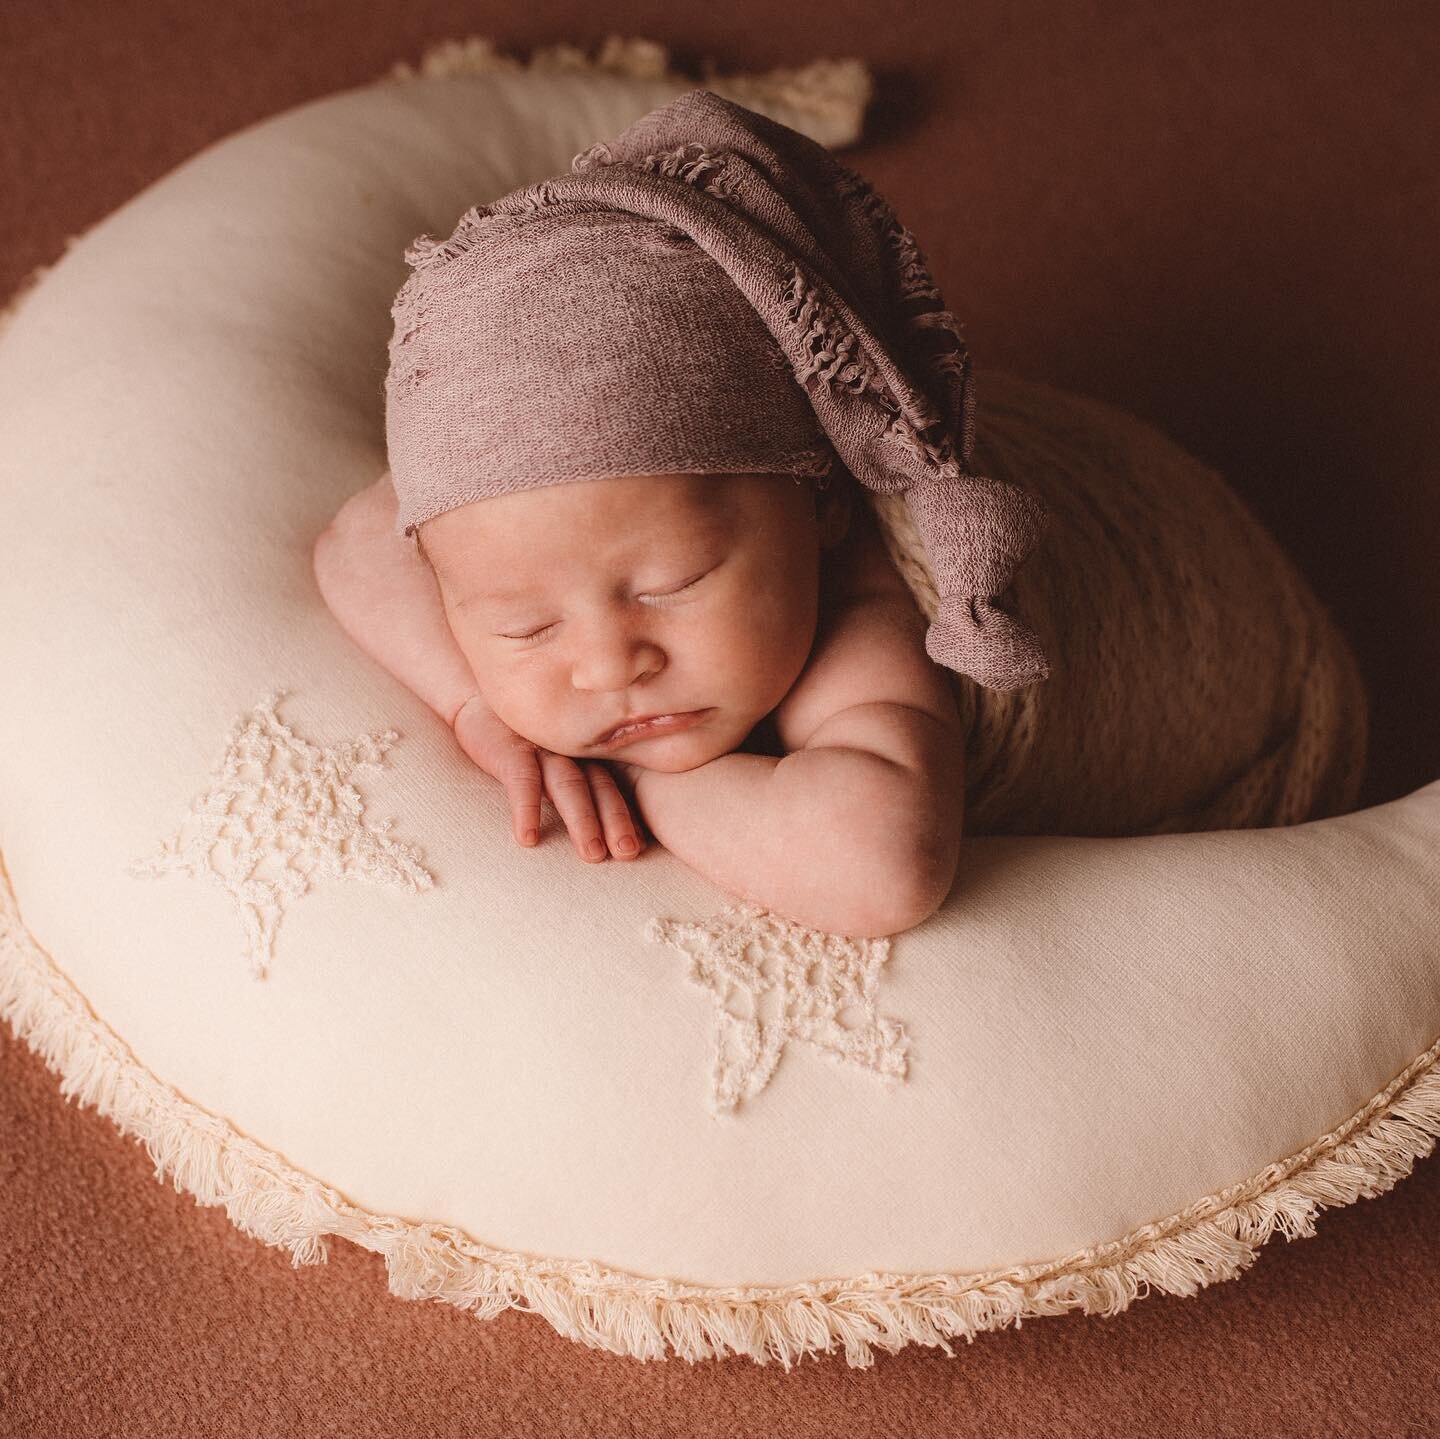 S&eacute;ance nouveau-n&eacute; au studio 

📍Mulhouse
👩&zwj;🍼entre 4 et 19 jours de vie 
&bull; tous les accessoires sont fournis par le studio 
&bull; 350 euros les 10 photos 

#baby #babyposing #babygirl #newborn #newbornphotography #newbornbaby